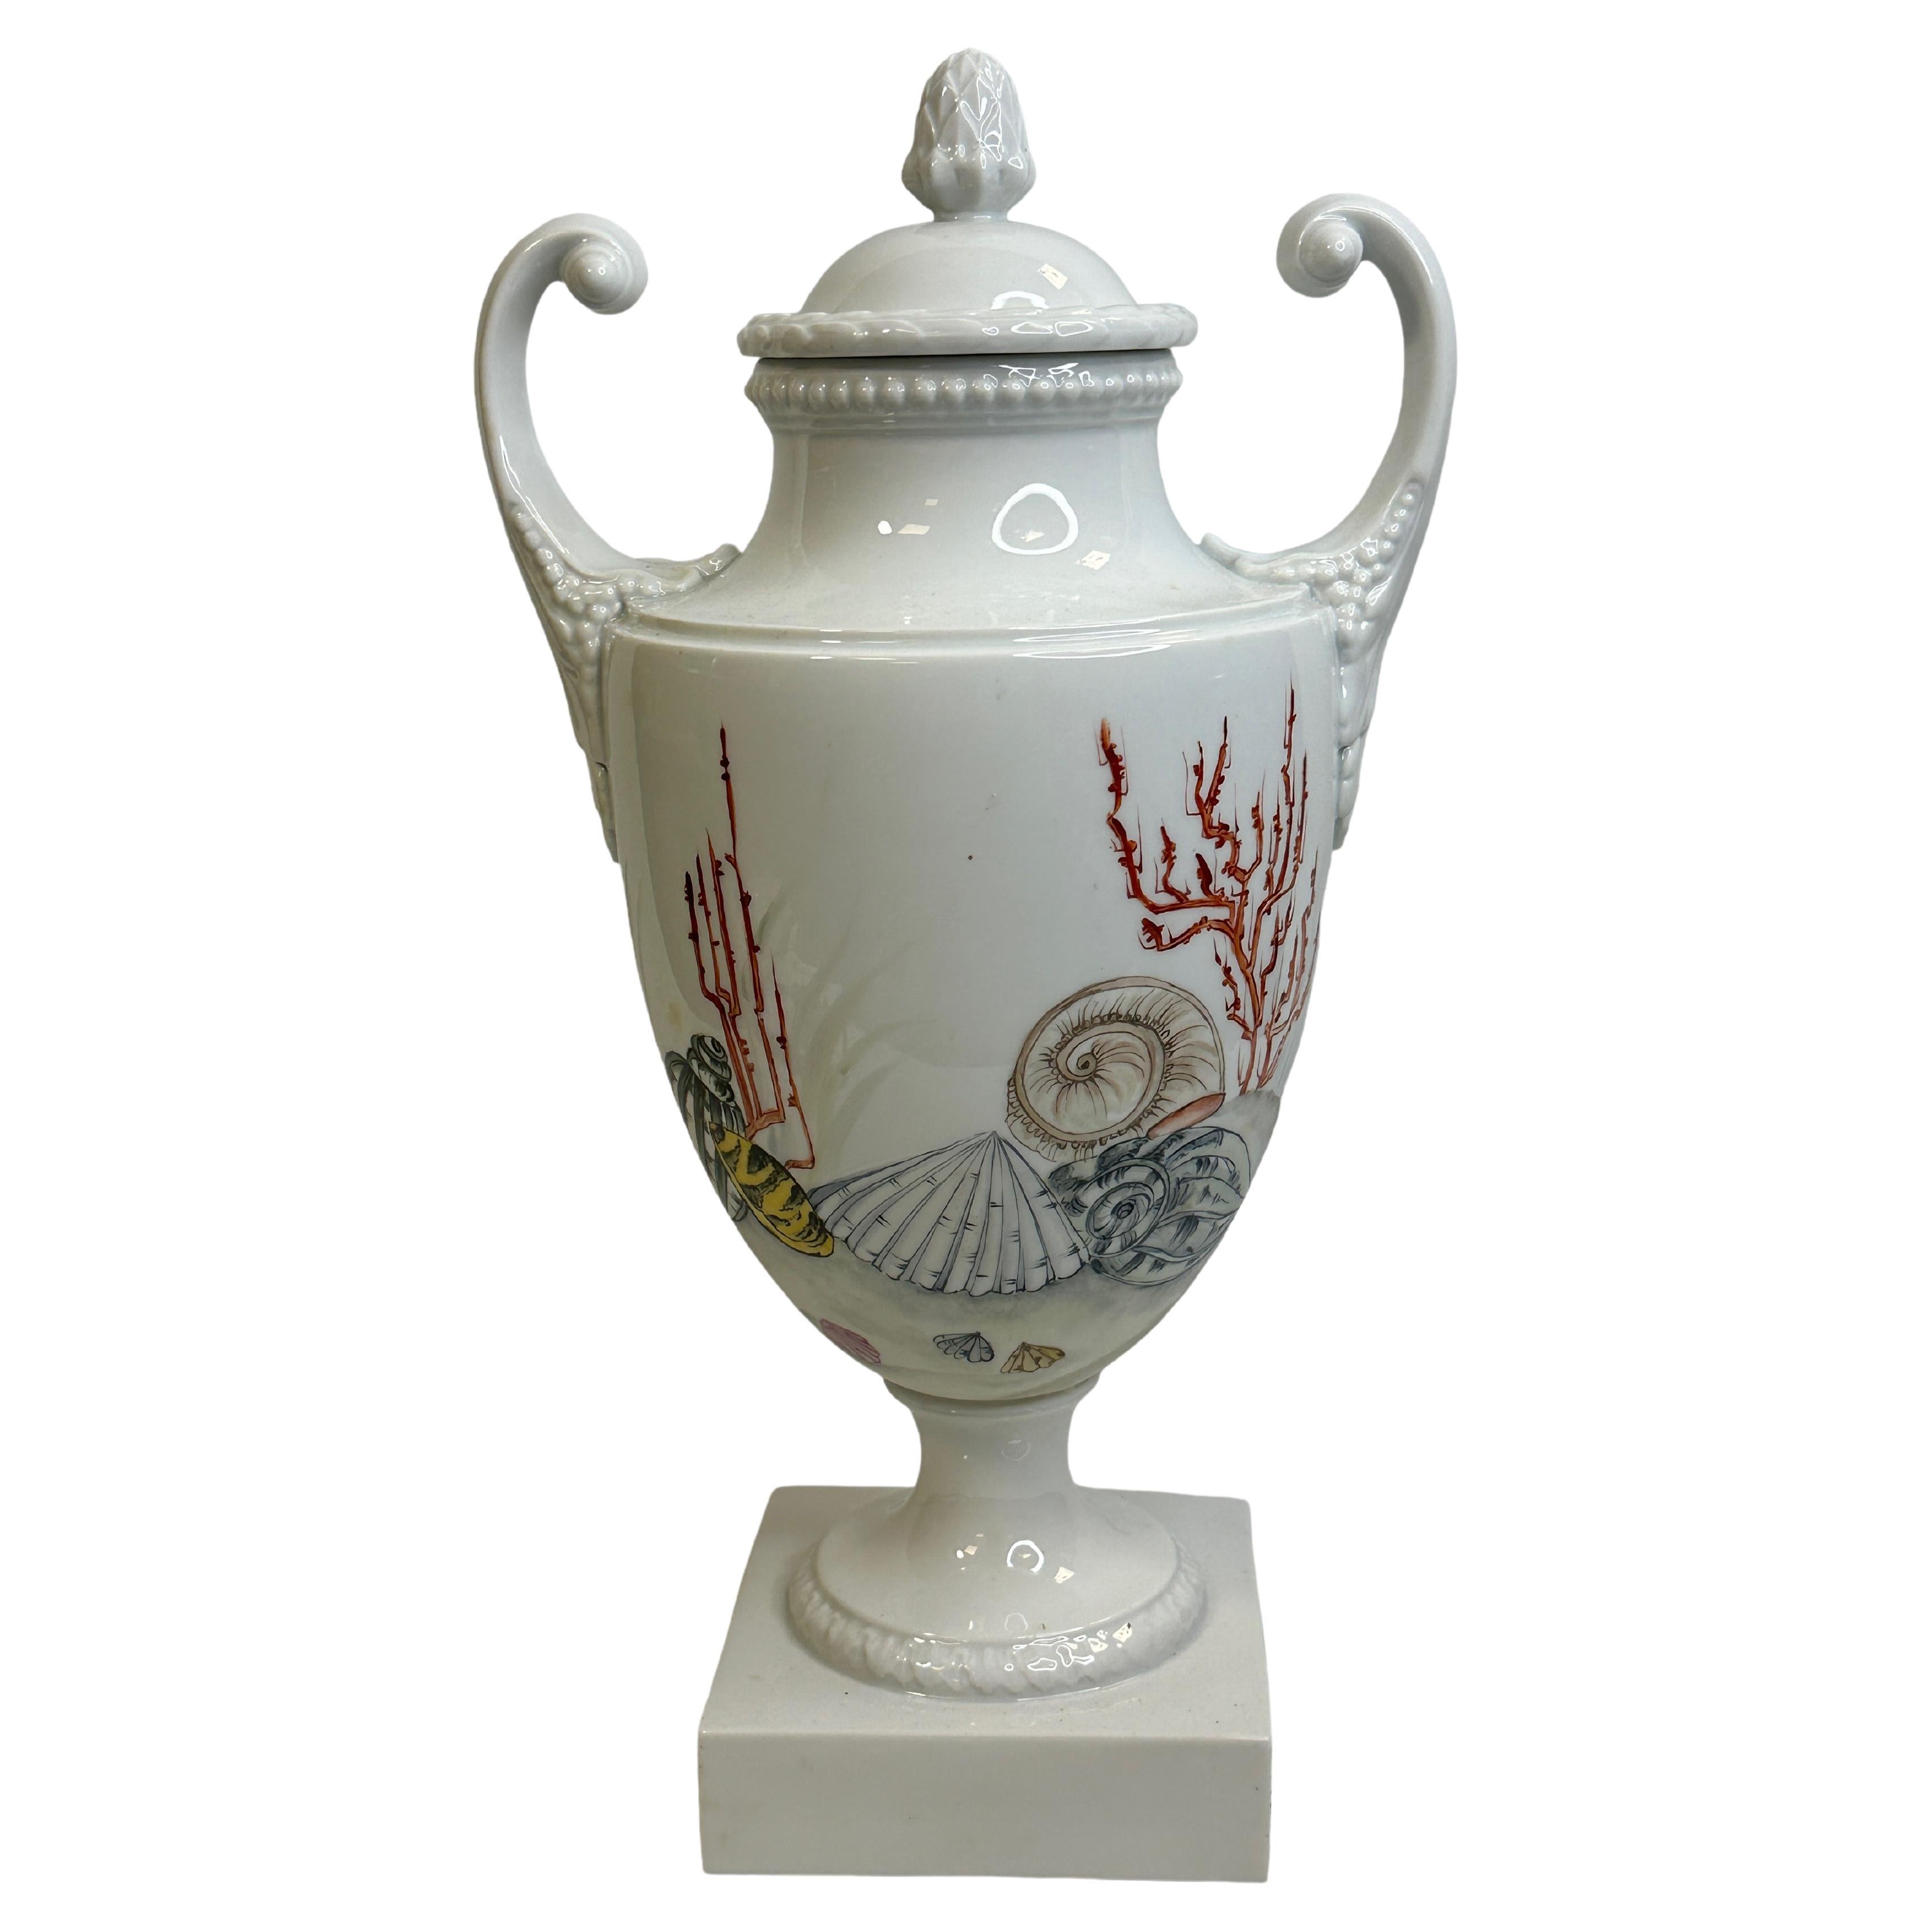 Amphora lidded Vase with Sea Creatures Motif by Lindner Porcelain vintage 1960s